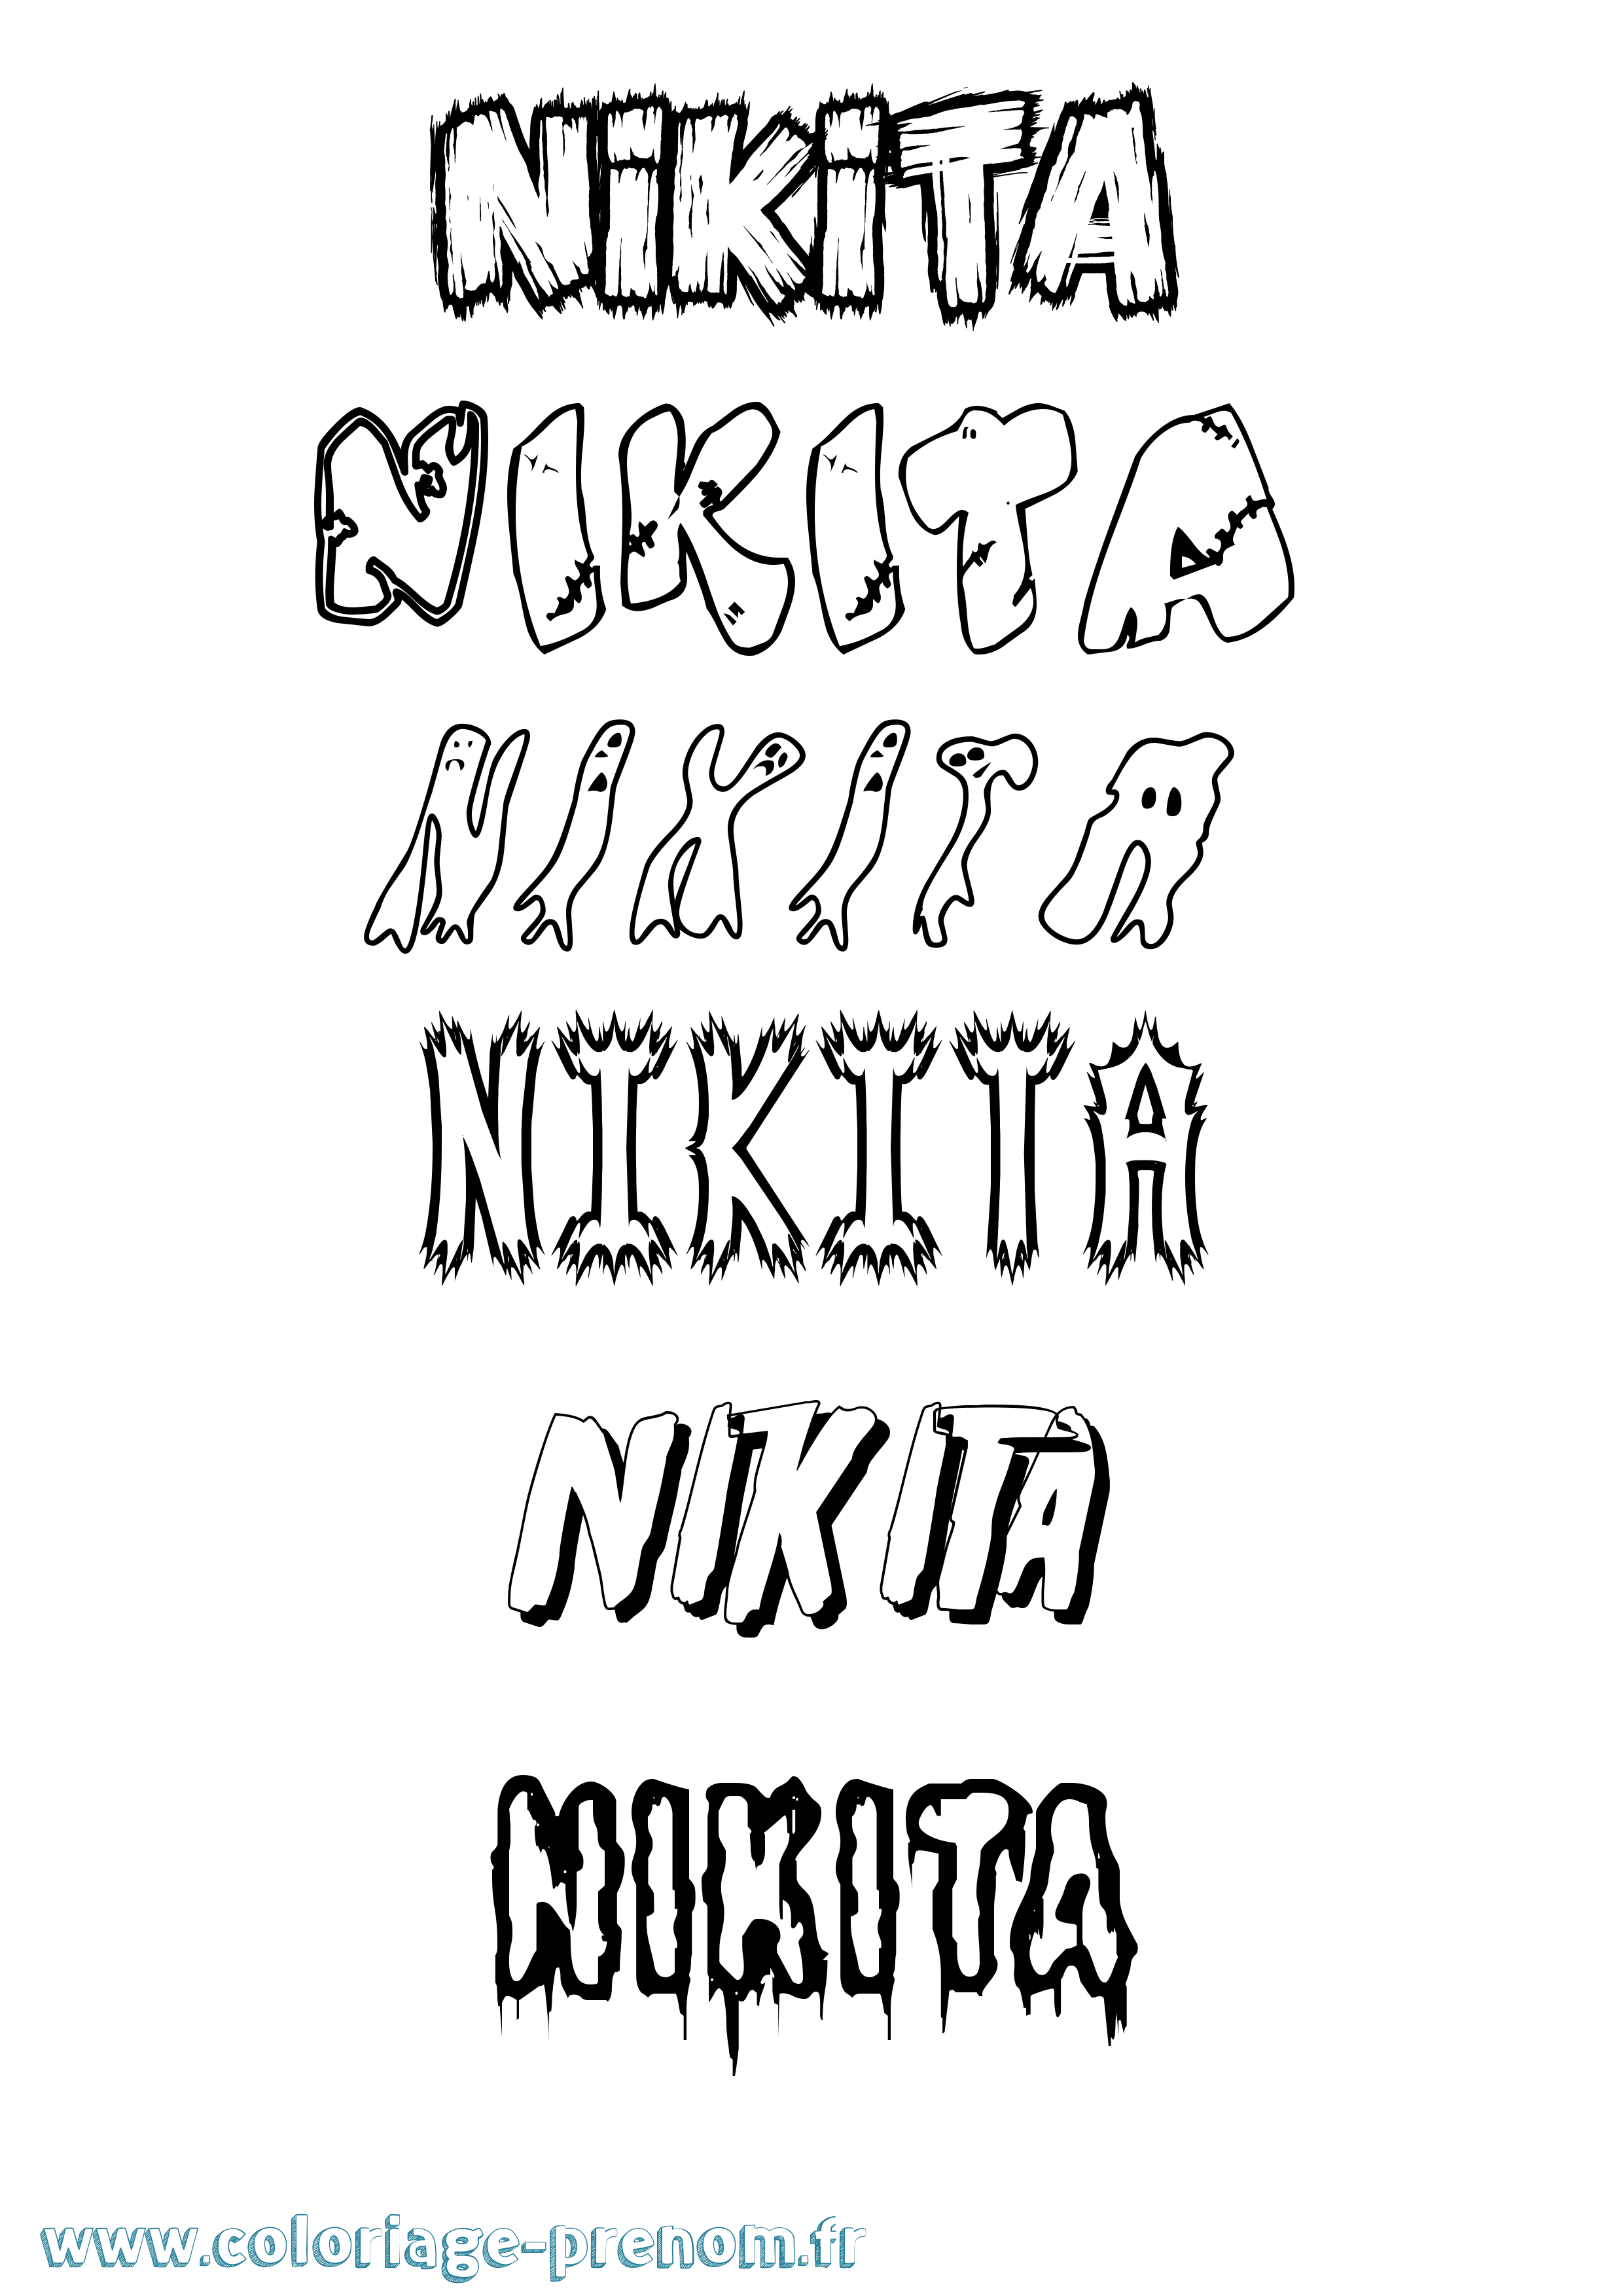 Coloriage prénom Nikita